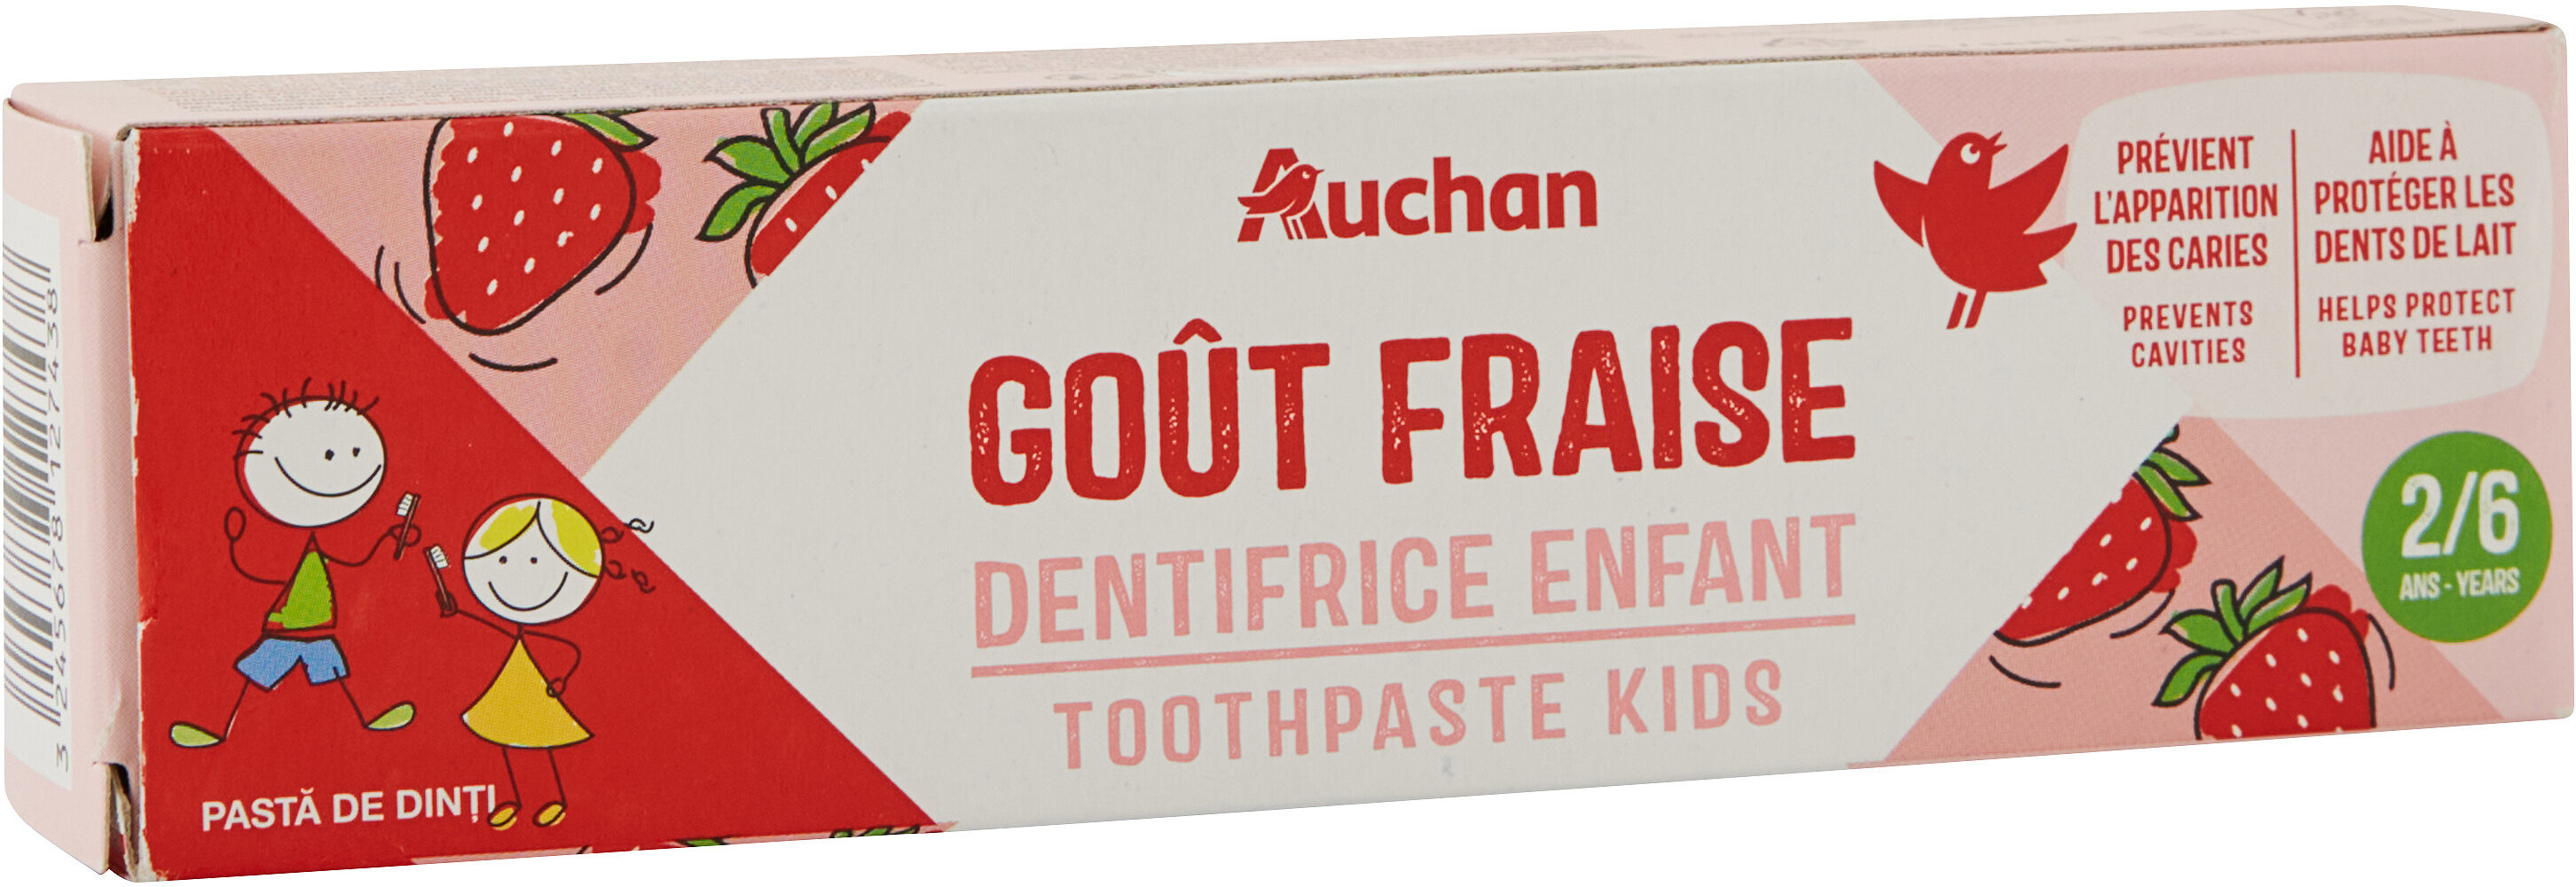 Auchan kids dentifrice fraise tube 2 + - 50ml - Продукт - fr